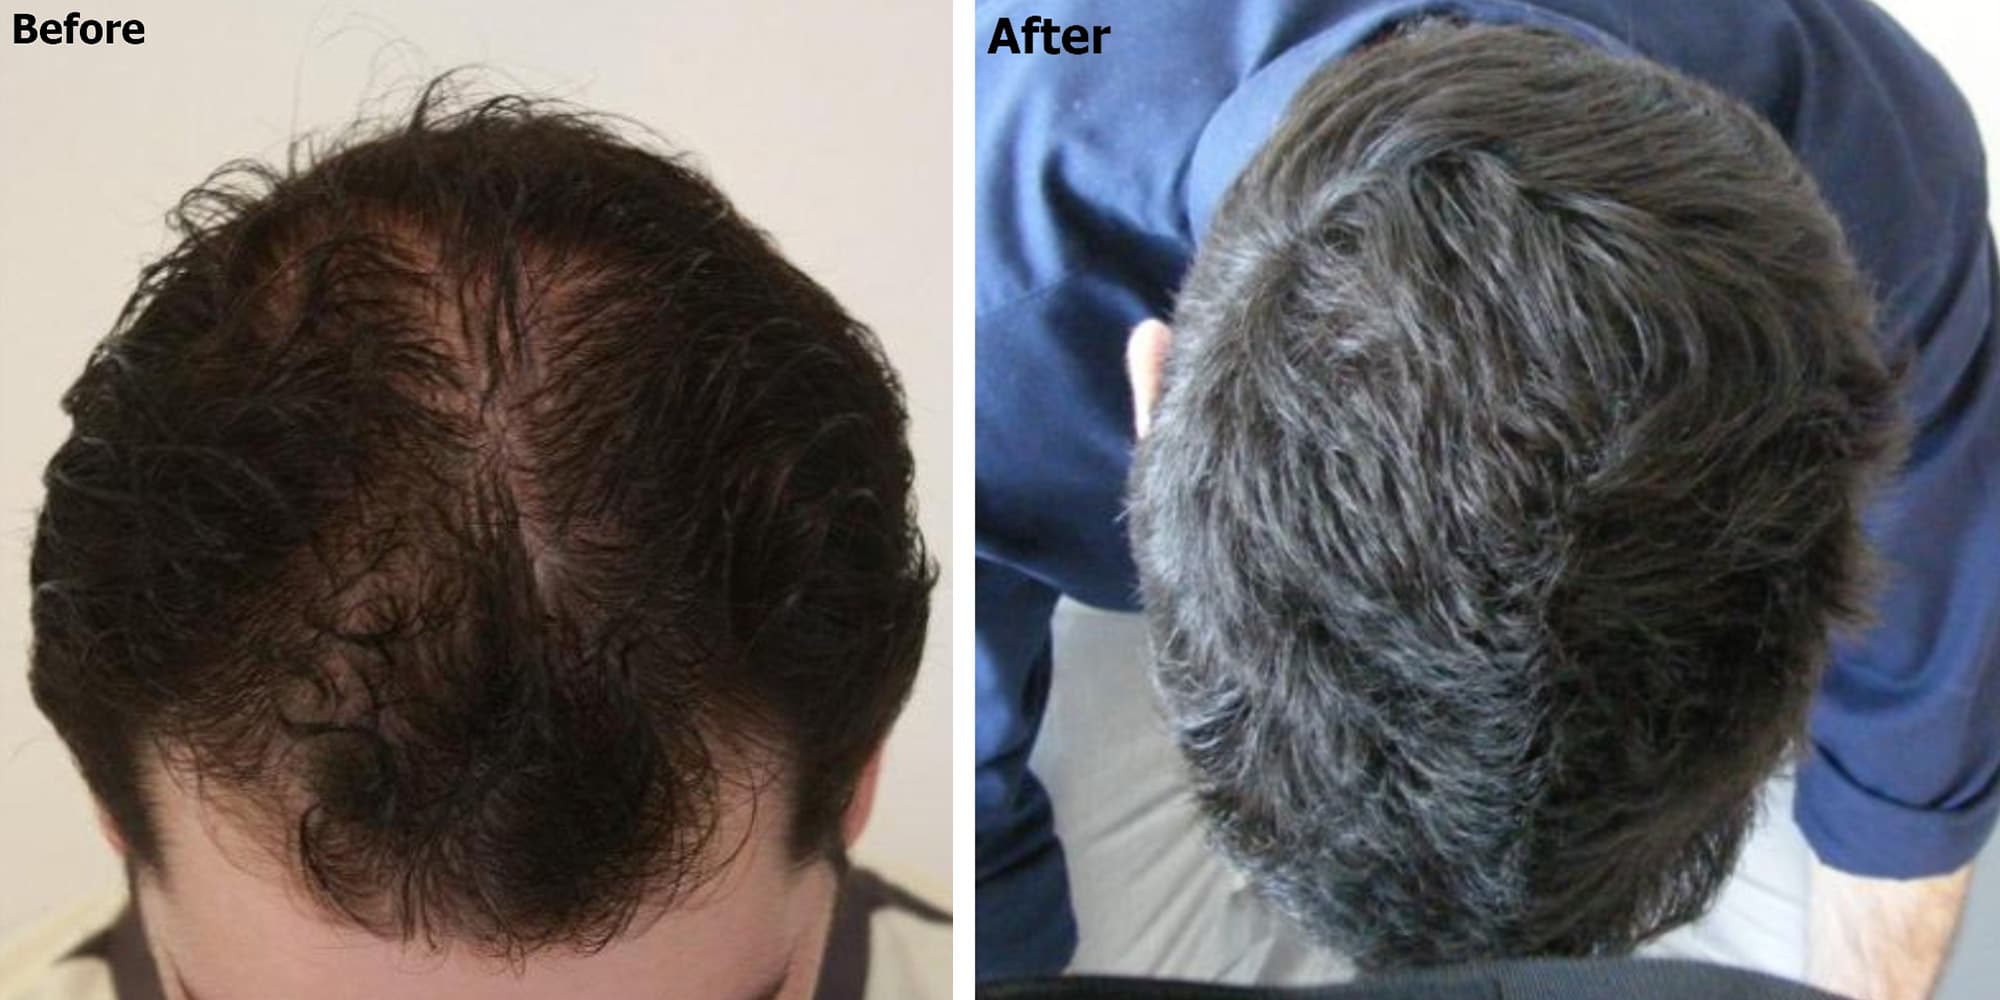 Diffuse Hair Loss Alopecia Causes Signs And Treatments